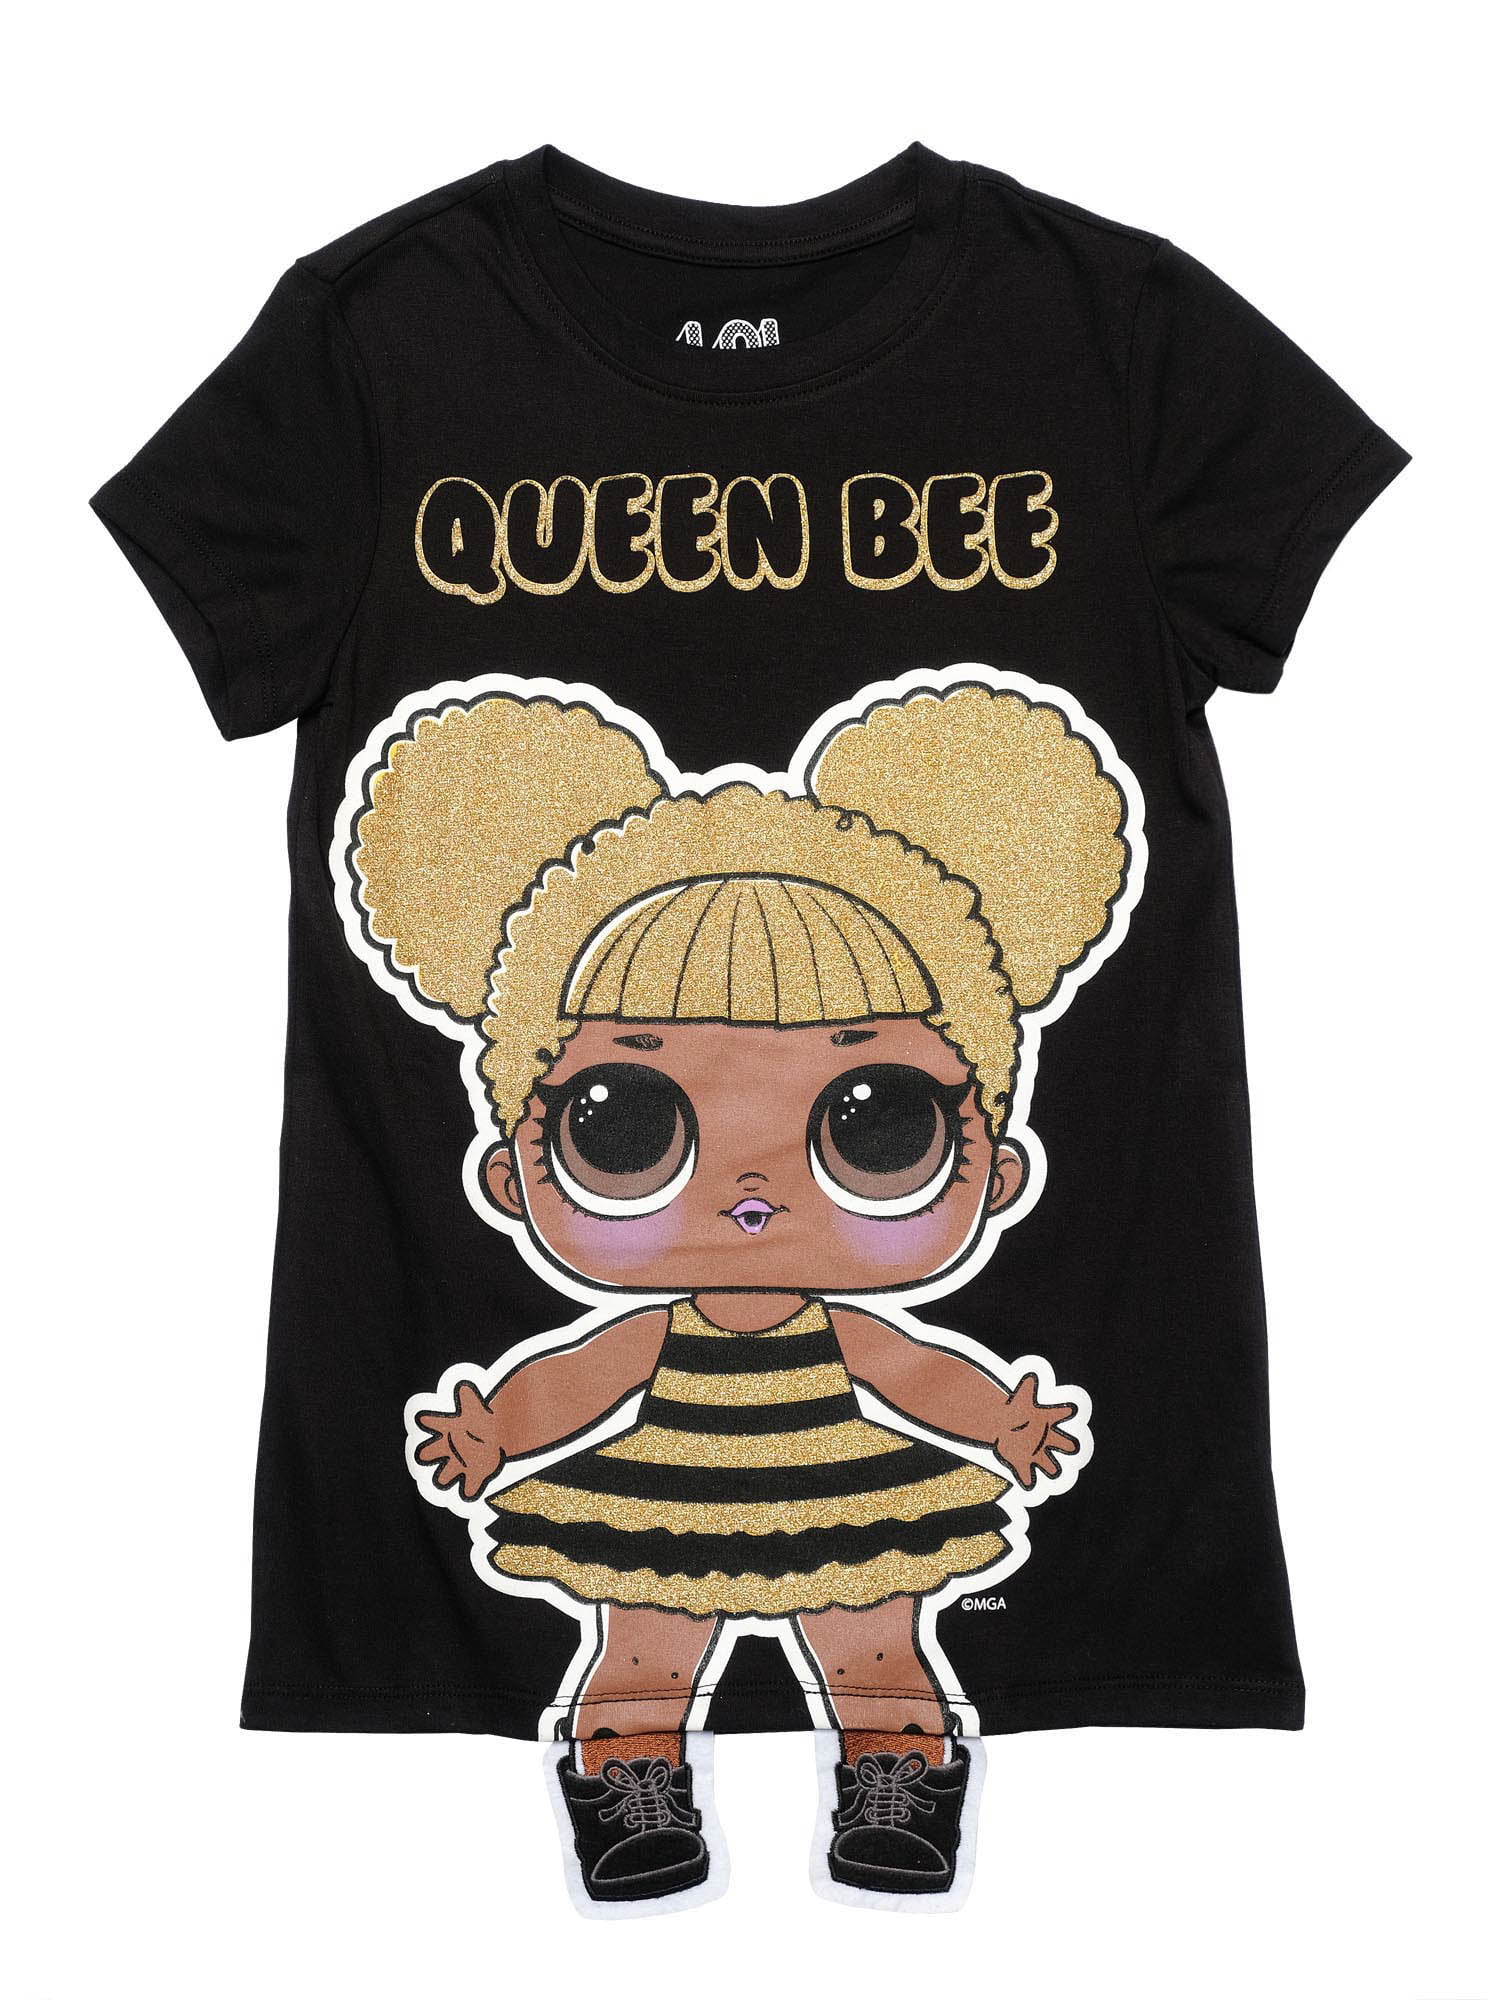 lol queen bee shirt